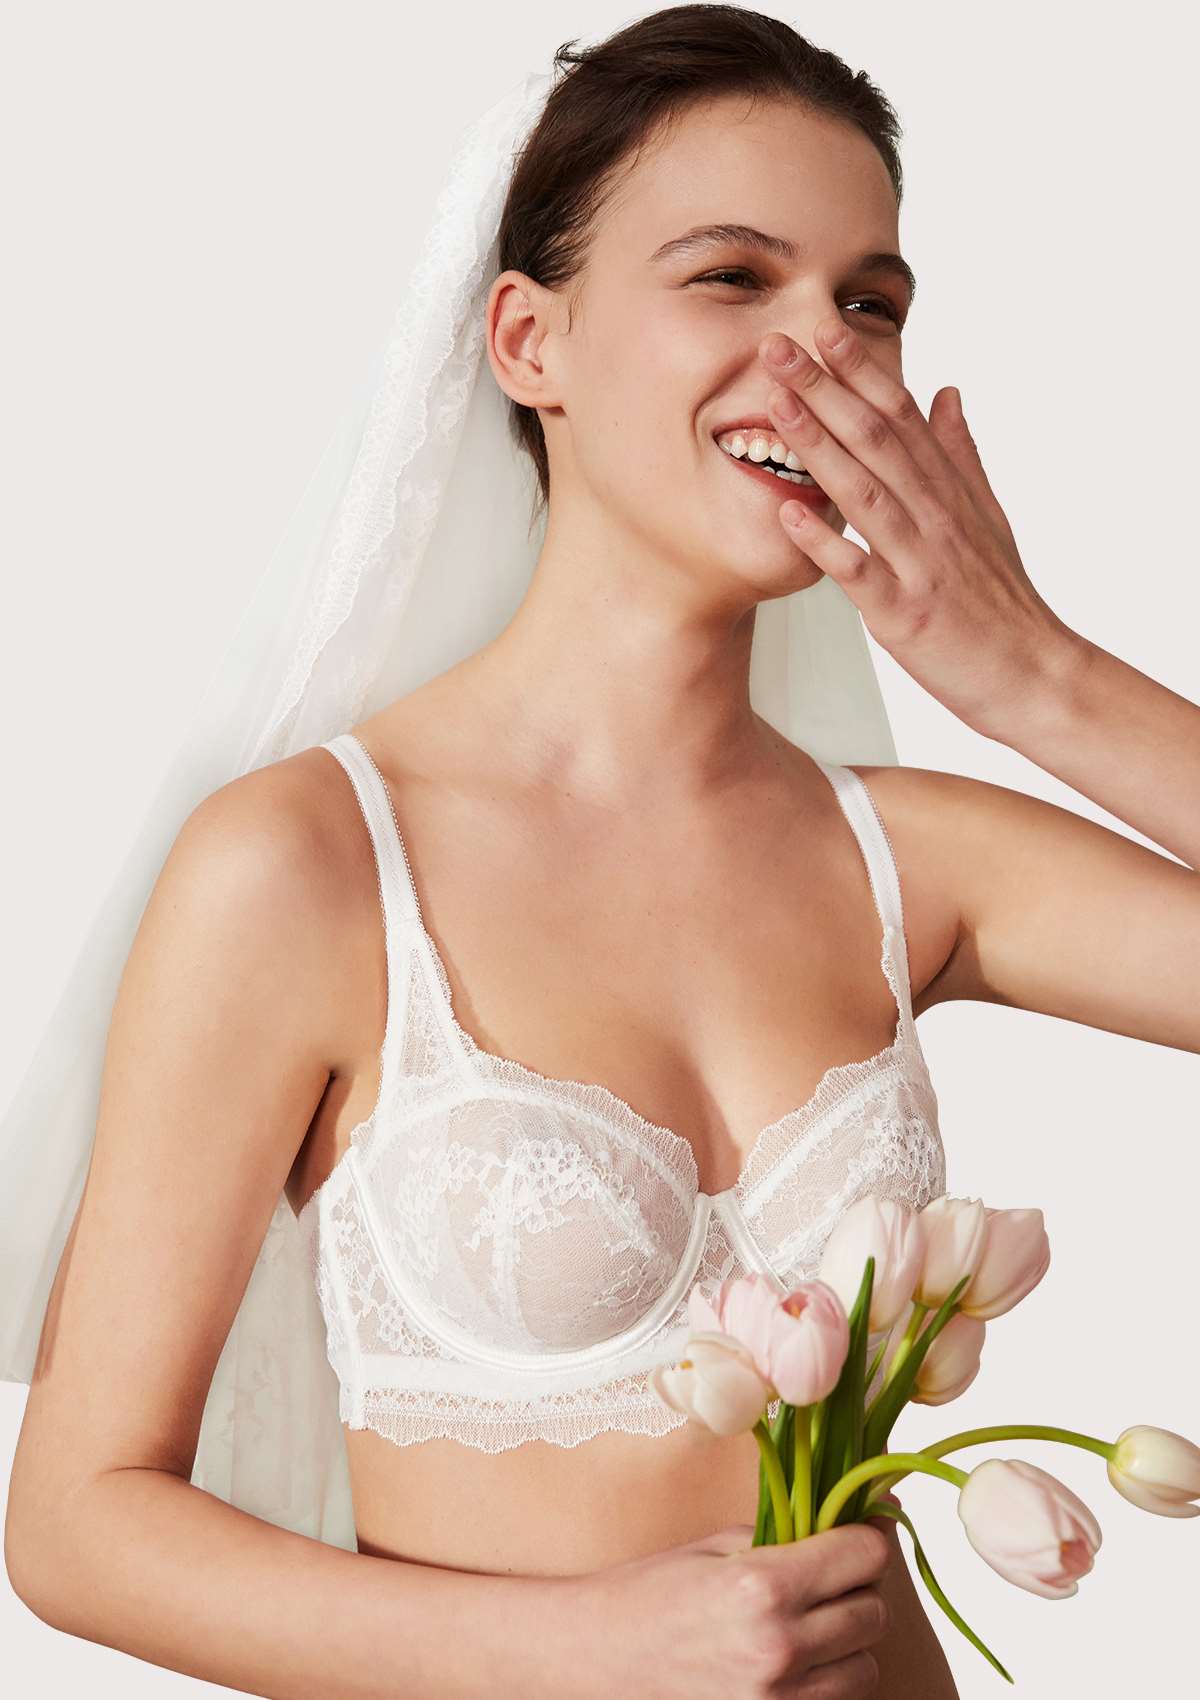 HSIA Floral Lace Unlined Bridal Romantic Balconette Bra Panty Set  - White / 40 / D